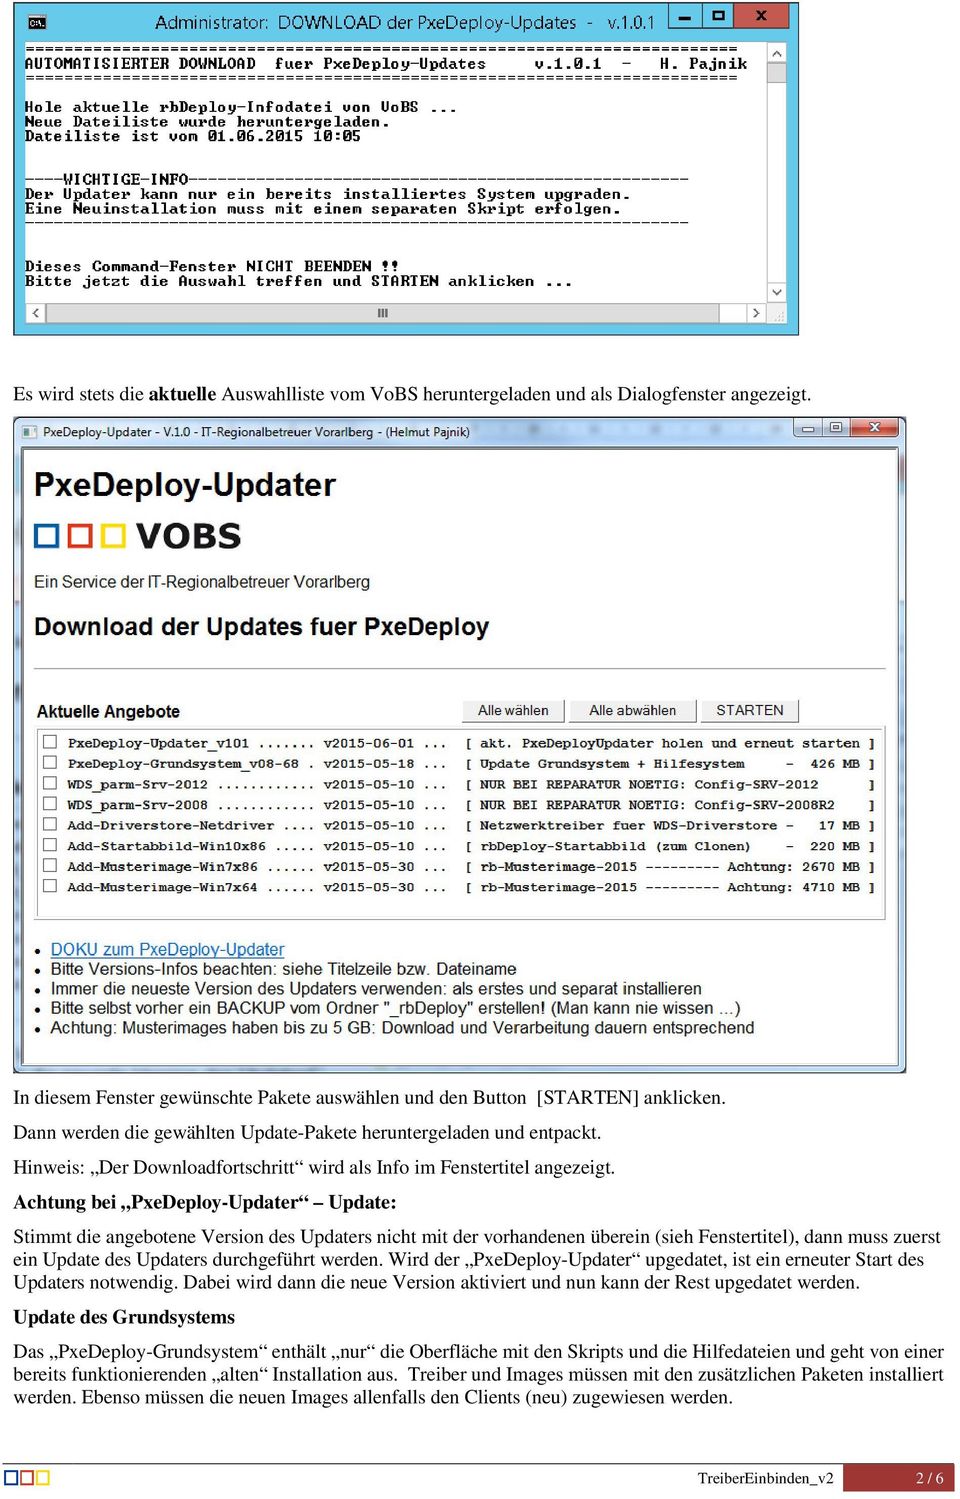 Achtung bei PxeDeploy-Updater Update: Stimmt die angebotene Version des Updaters nicht mit der vorhandenen überein (sieh Fenstertitel), dann muss zuerst ein Update des Updaters durchgeführt werden.